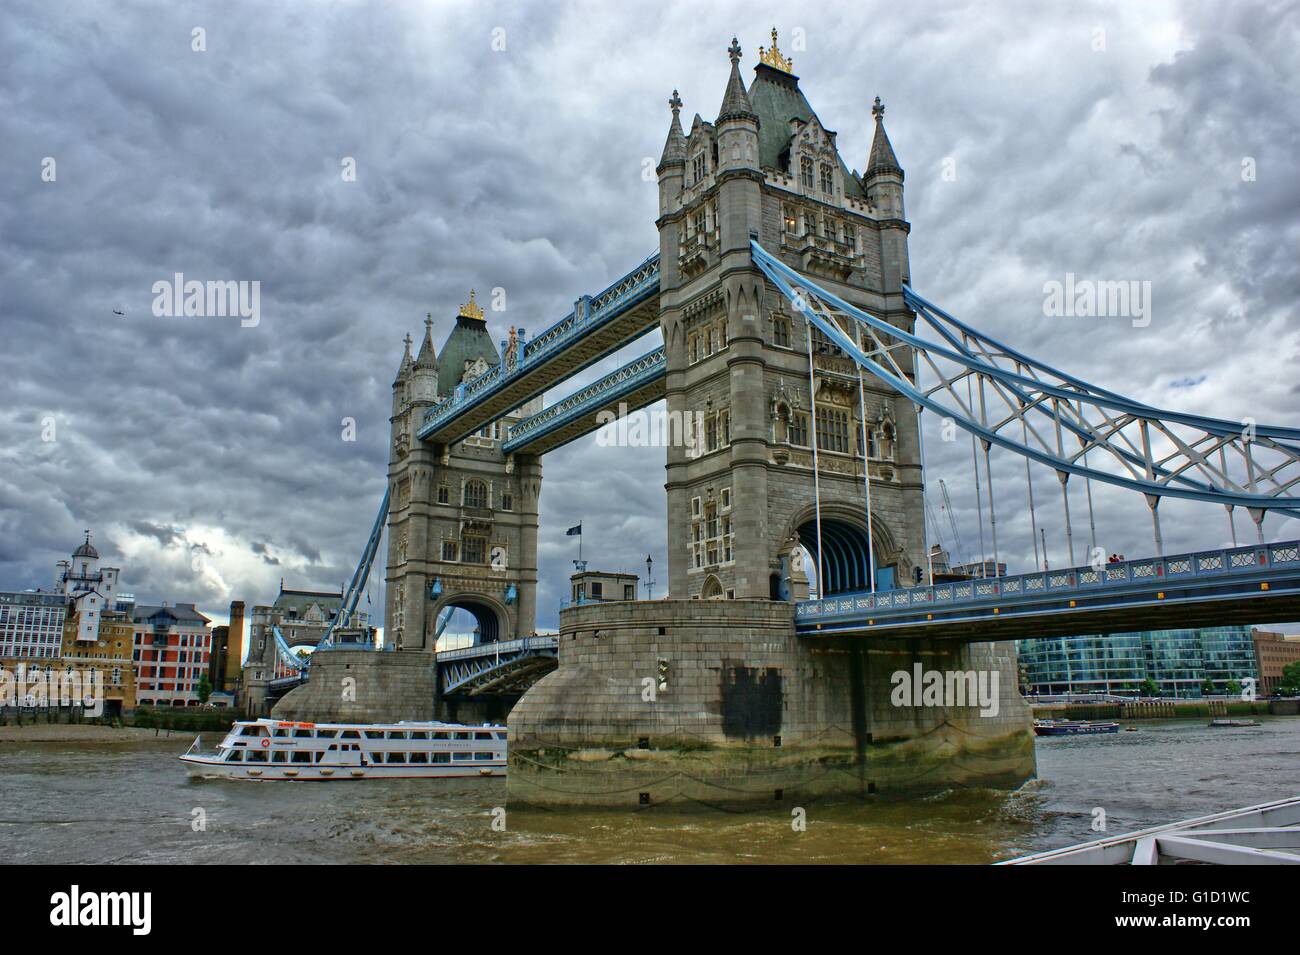 London Bridge, nahe dem Tower of London, dramatischen Blick mit bewölktem Himmel und alten Steinmauern Stockfoto